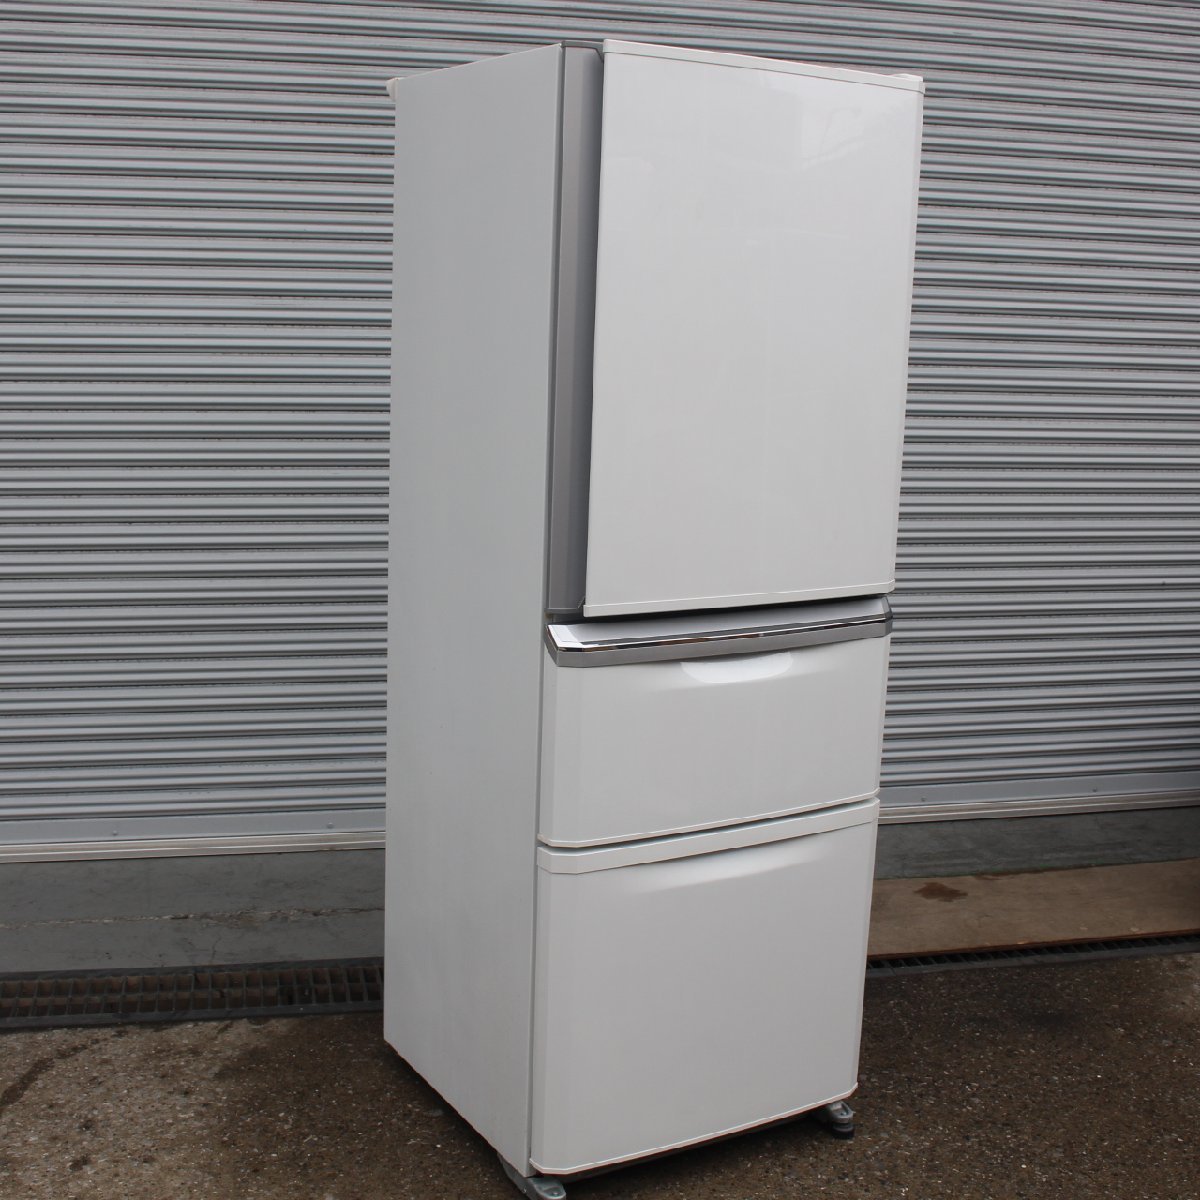 川崎市宮前区にて 三菱  ノンフロン冷凍冷蔵庫 MR-C34Z-W 335L 2015年製 を出張買取させて頂きました。